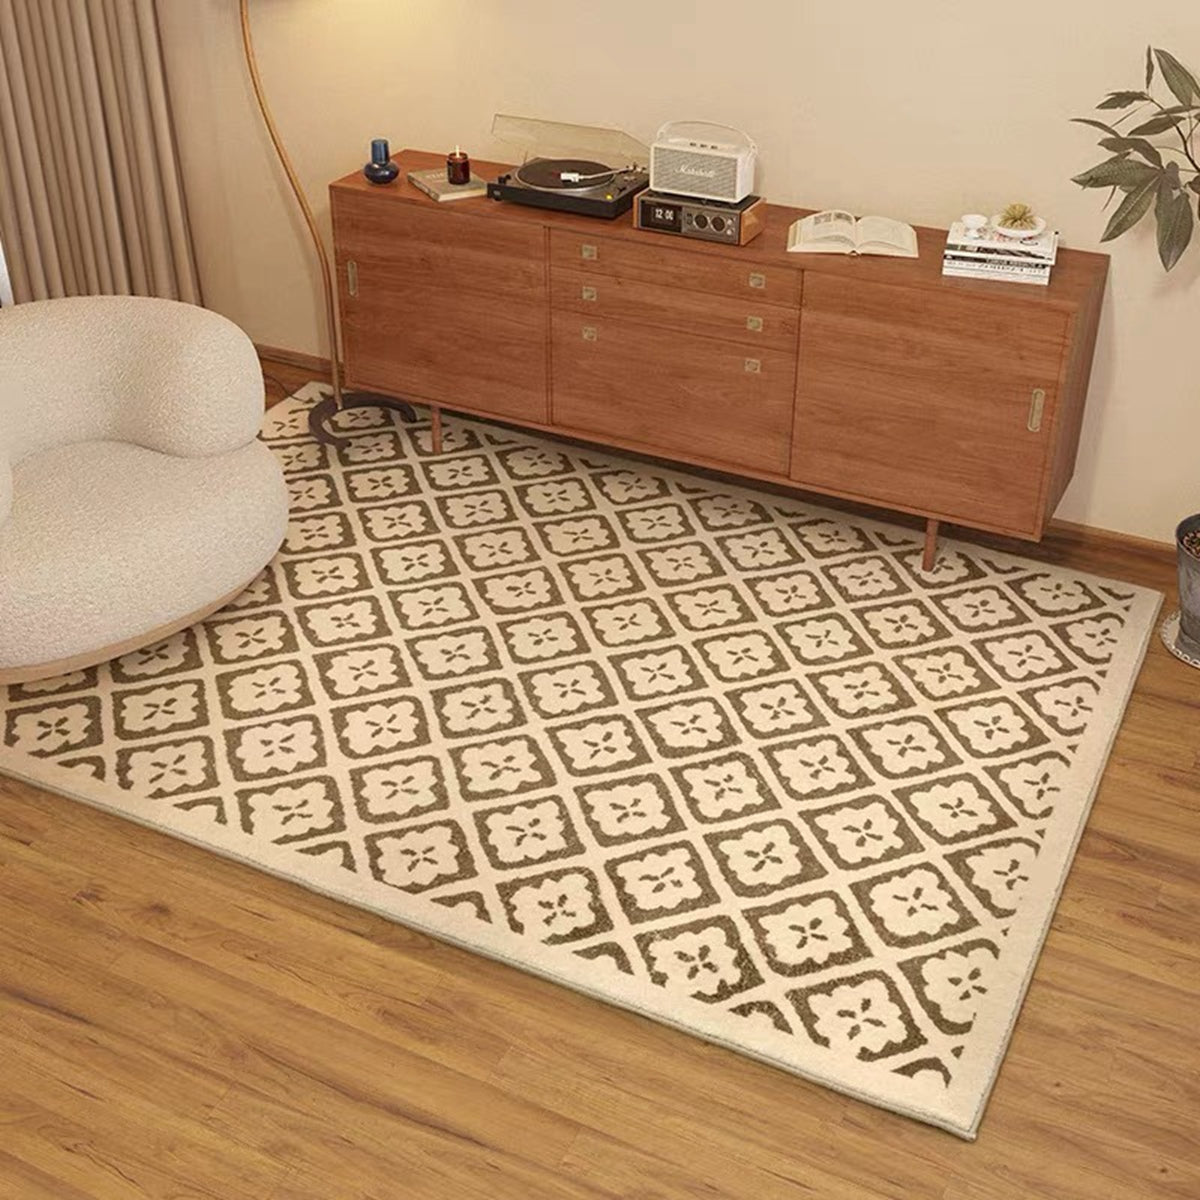 家庭用の地毯を選ぶ際には、適切なサイズを選ぶことが重要です。